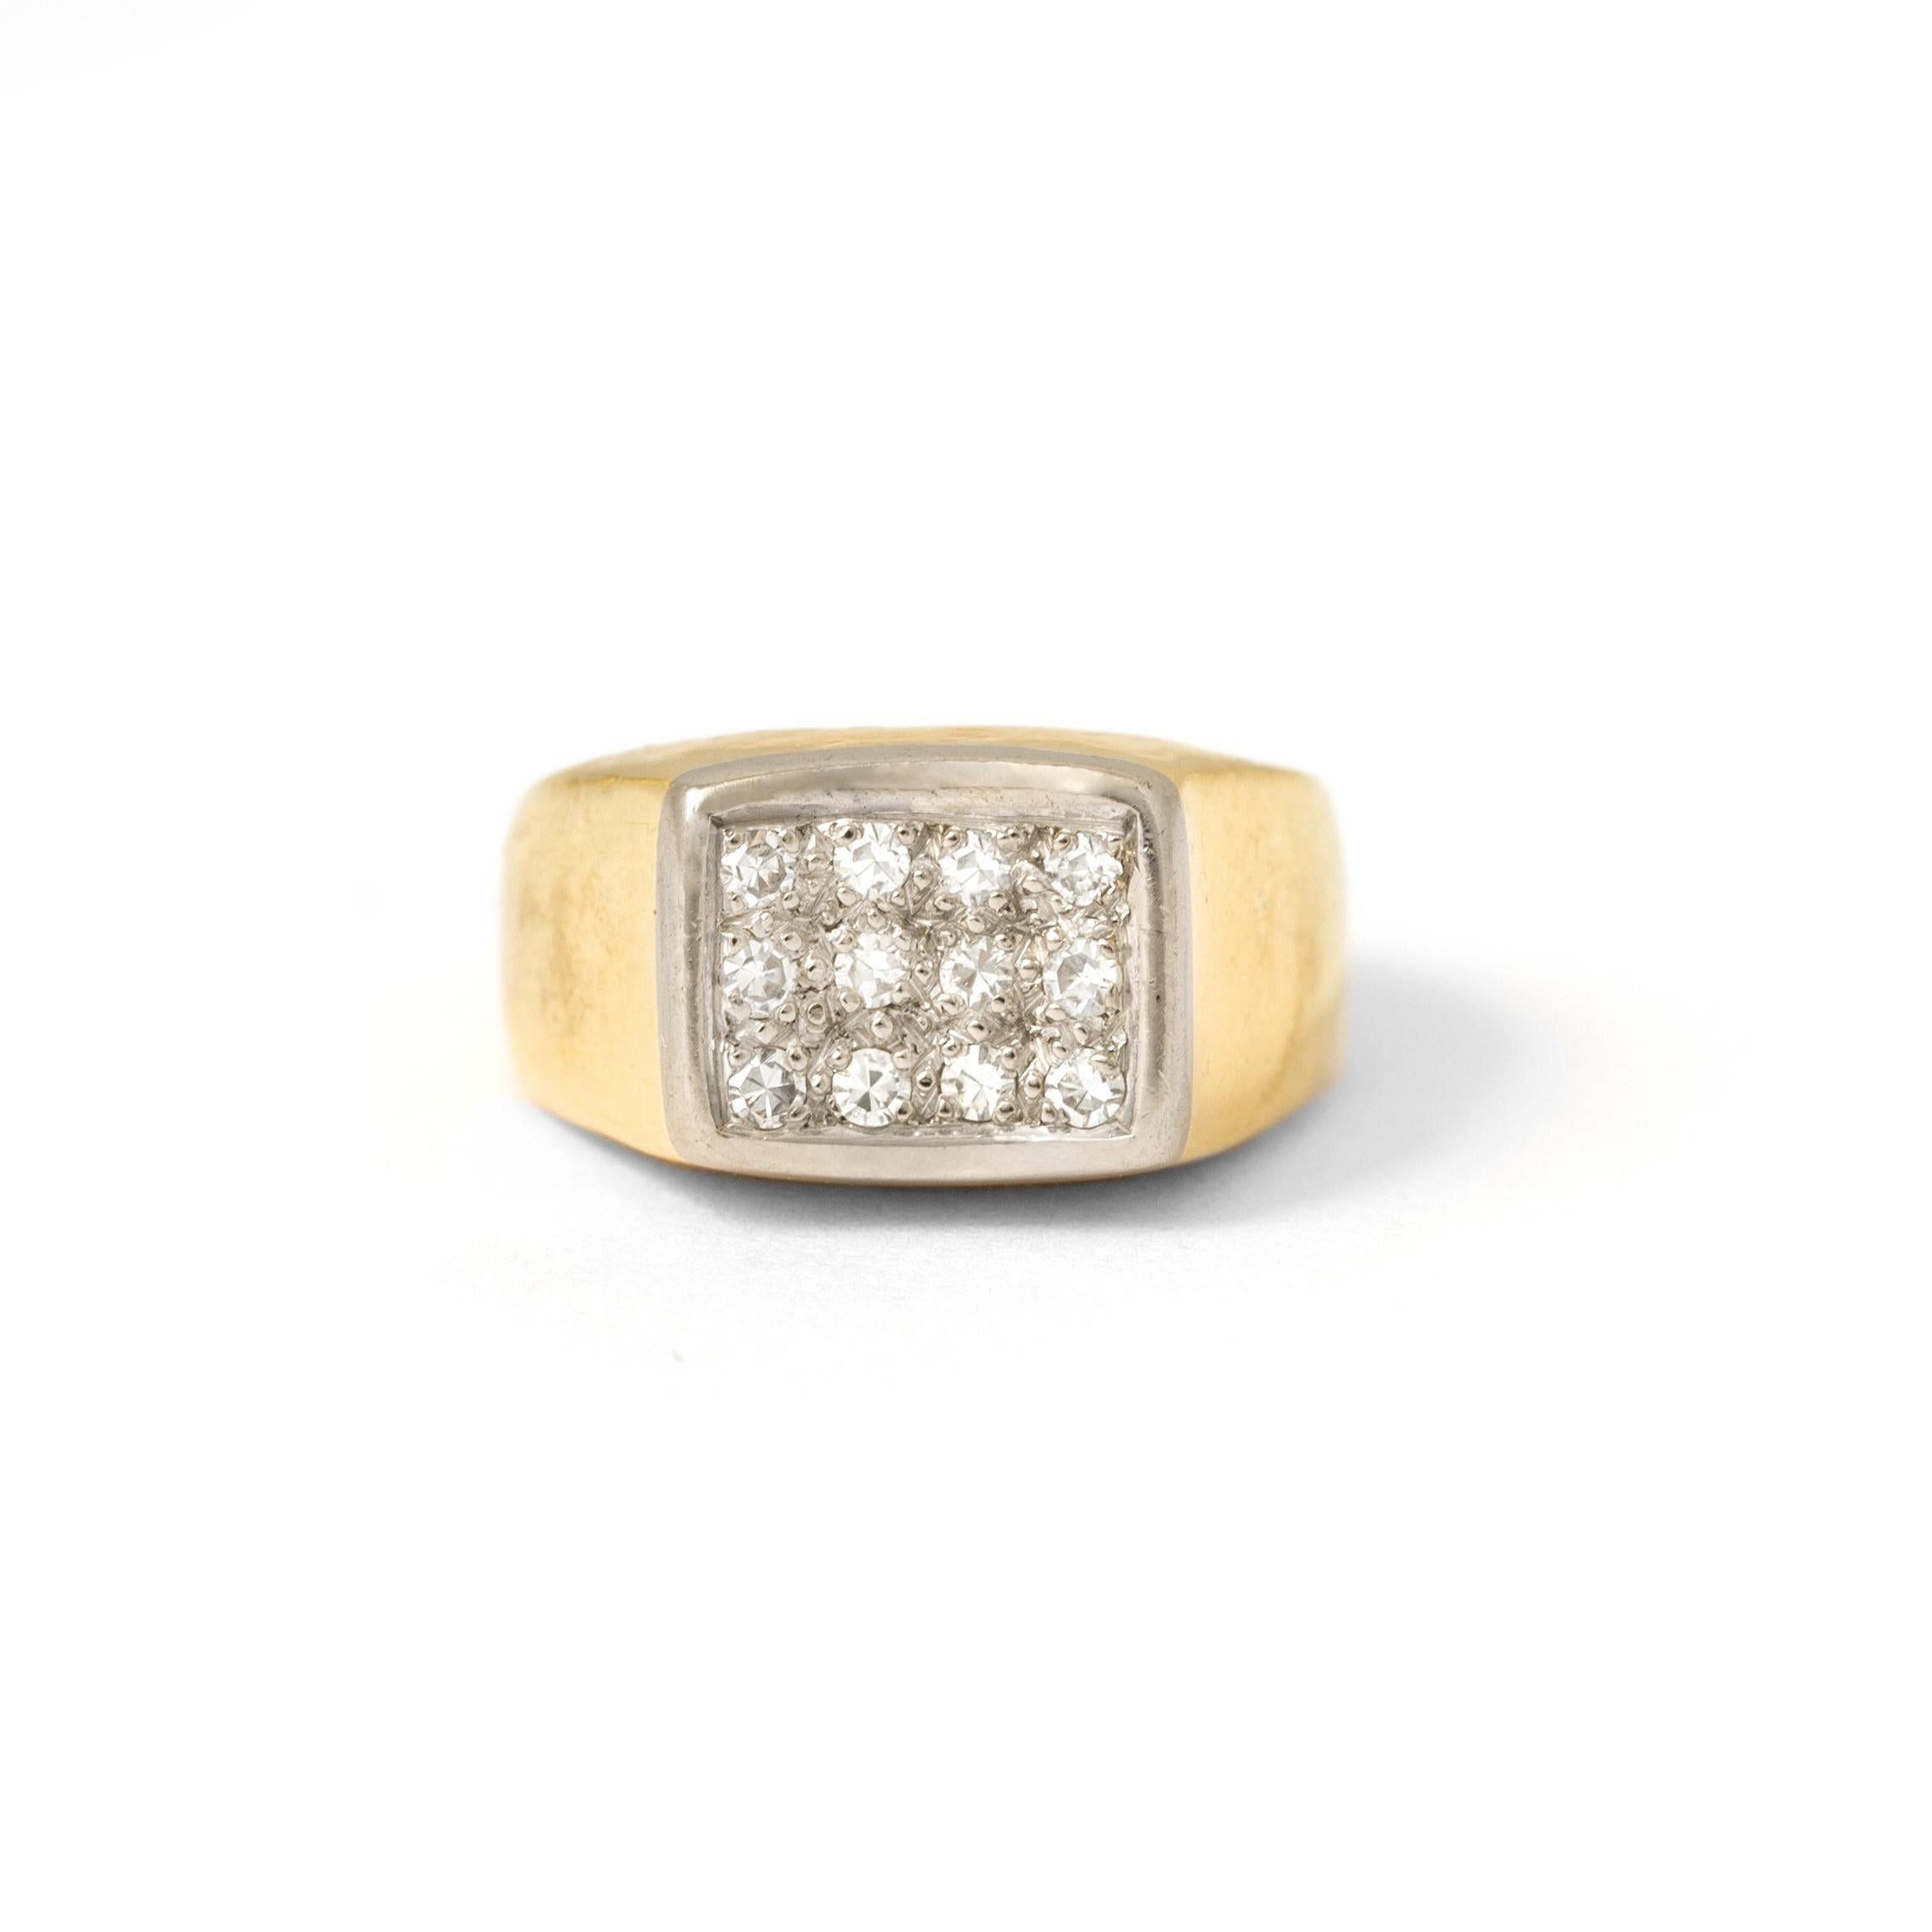 18 Karat Gelb- und Weißgold Ring mit Diamanten. 
Abmessungen des Hauptmusters: 8,37 x 10,03 mm. 
Größe: 43,5. 
Bruttogewicht: 5,36 Gramm.